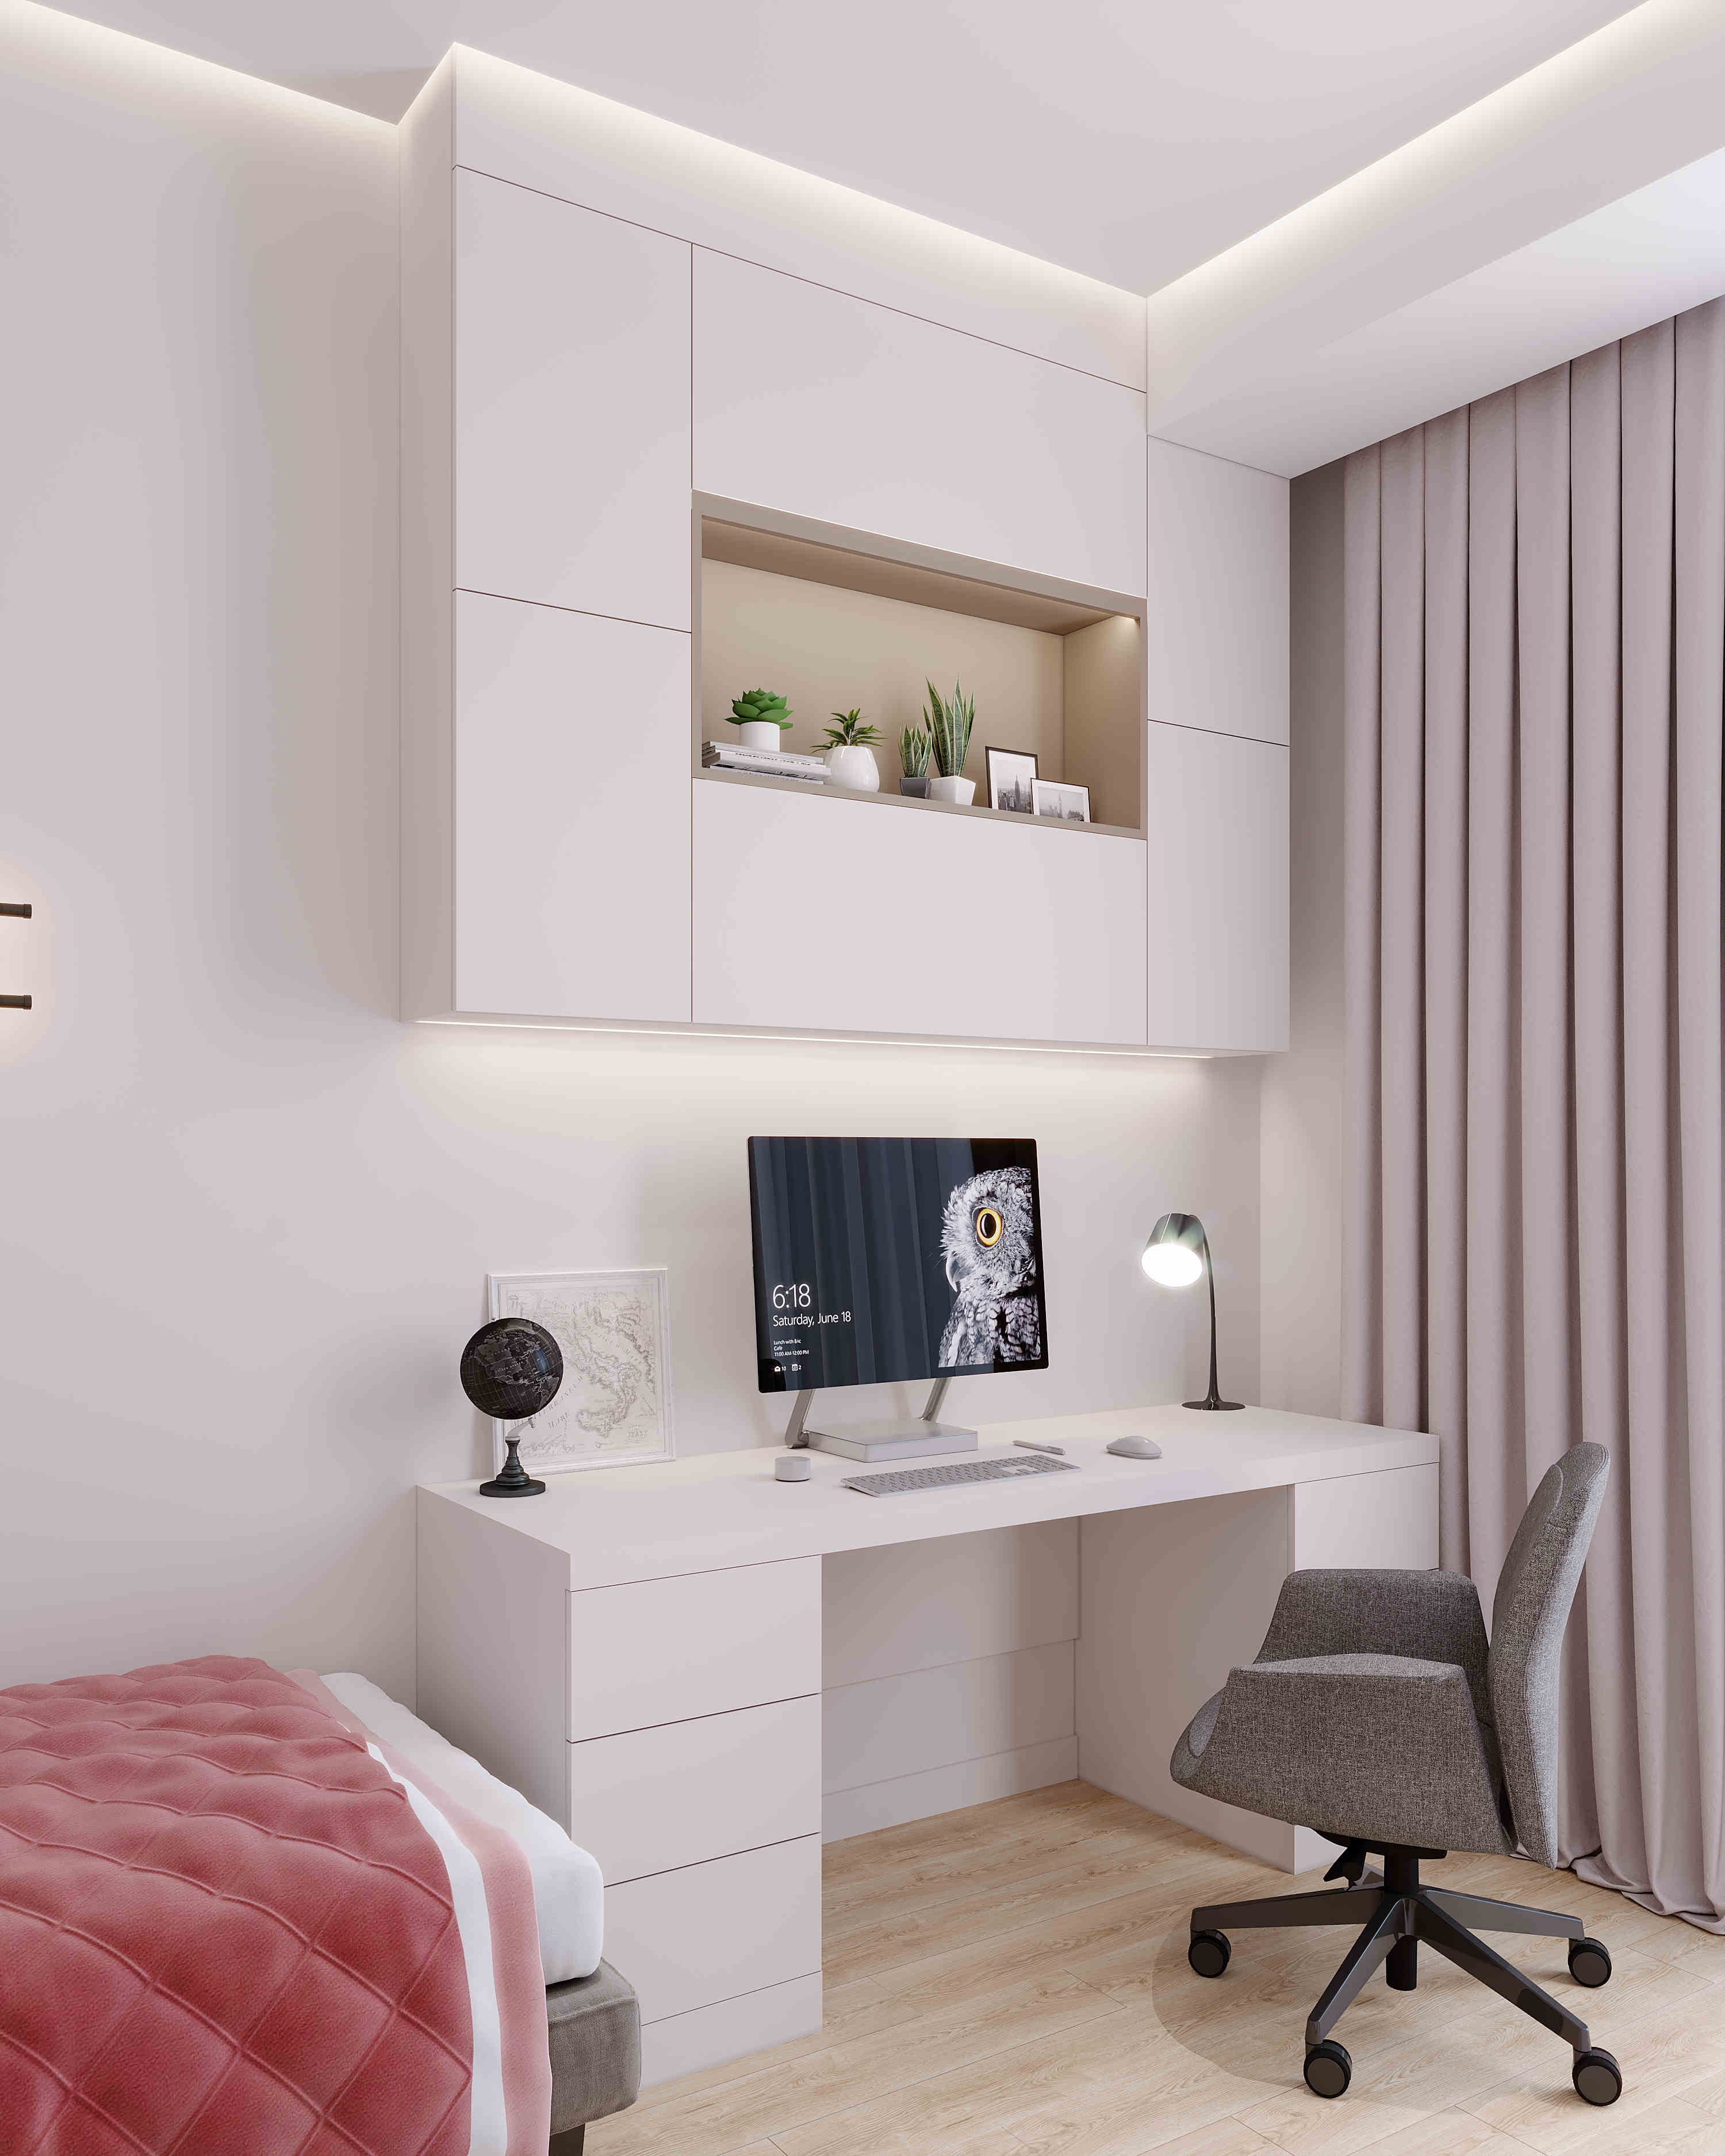 Bedroom (modern and minimalist)